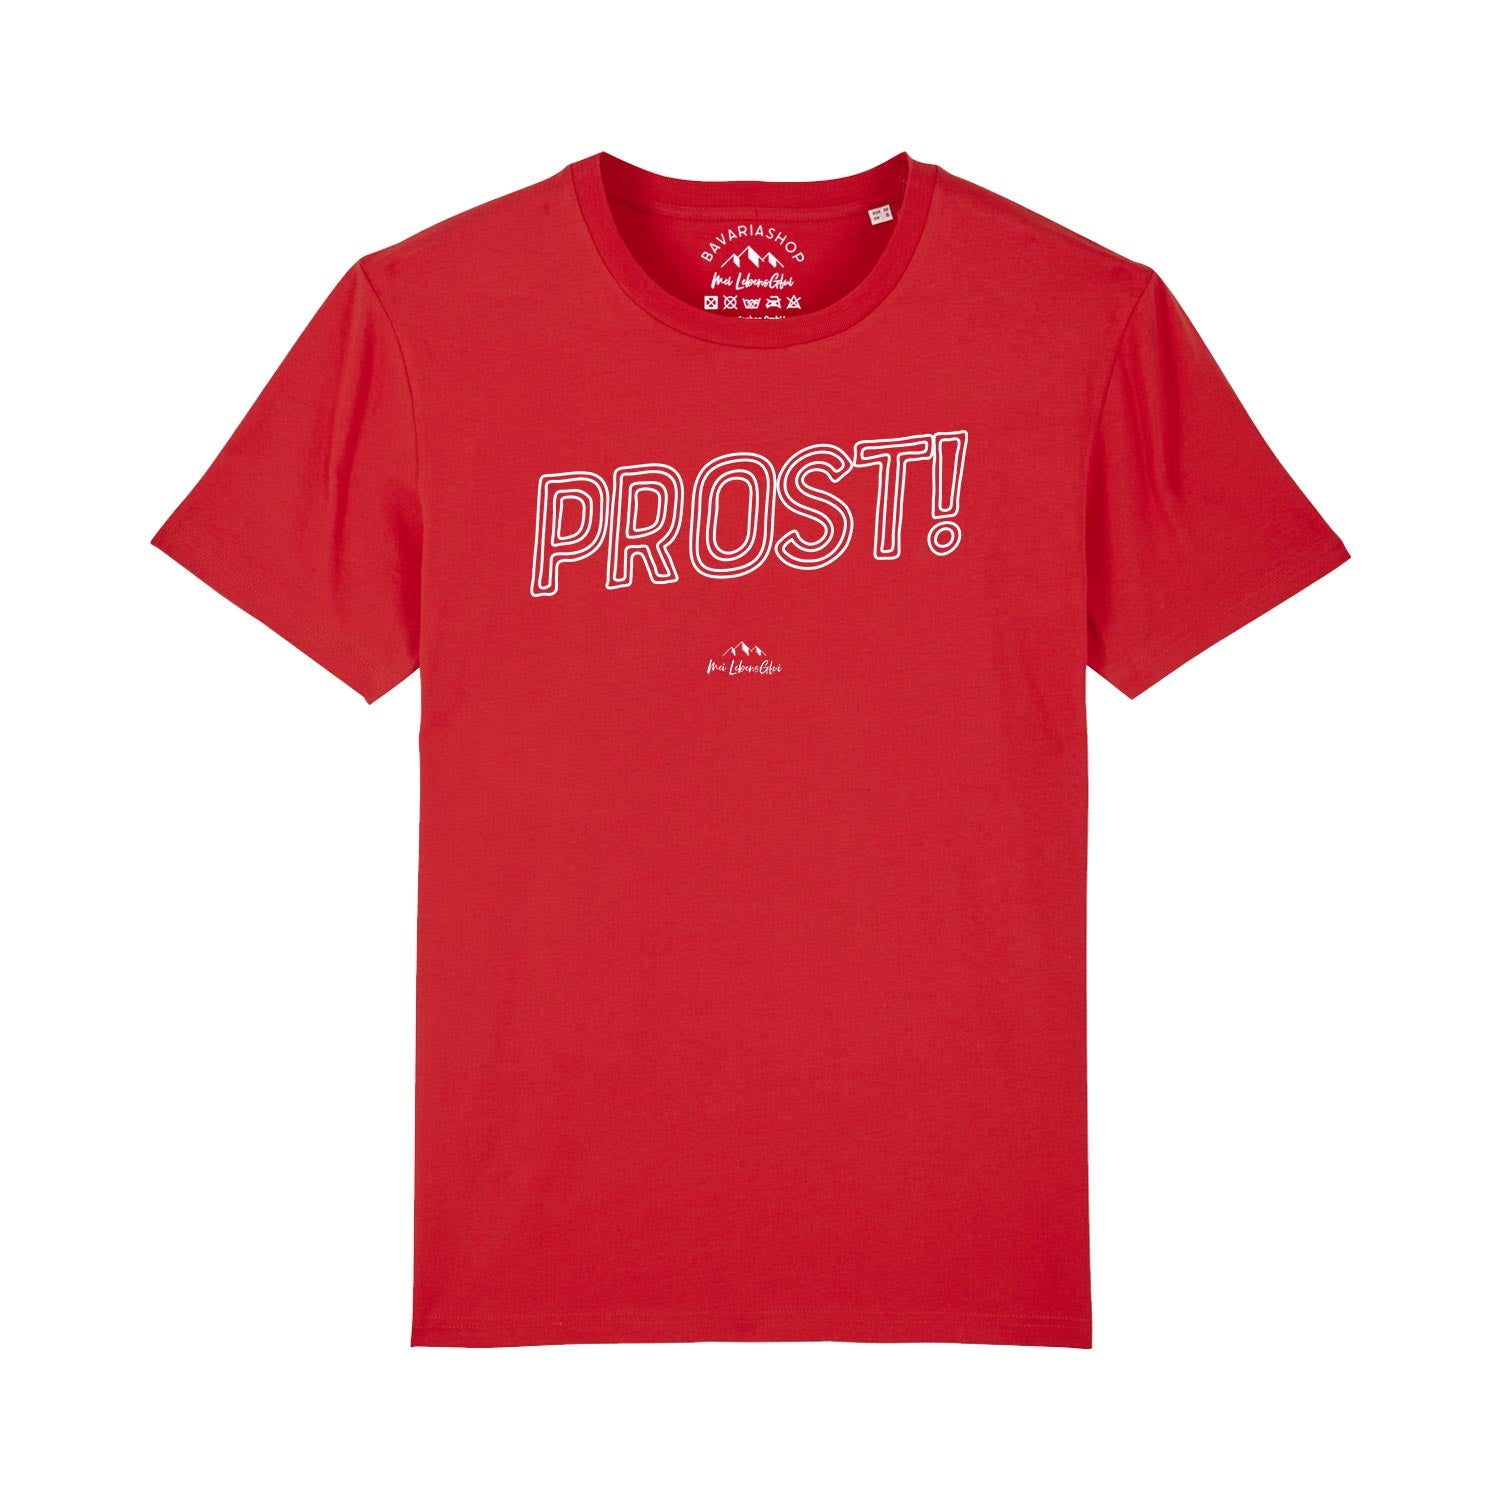 Herren T-Shirt "Prost!"